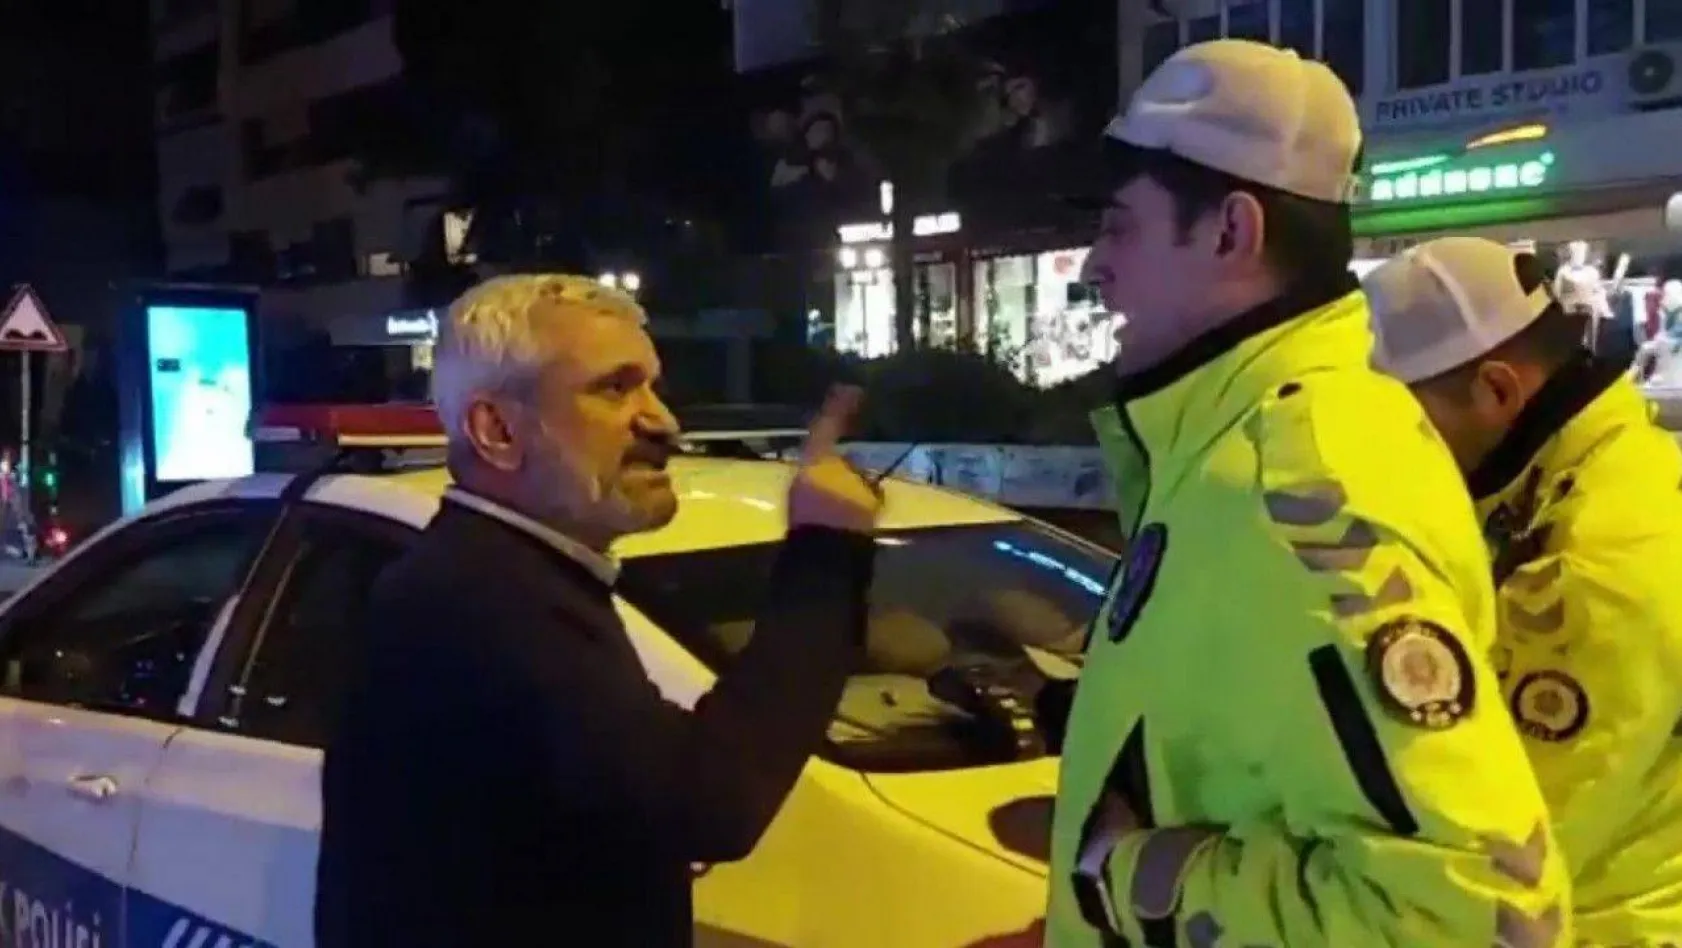 Kadıköy'de ceza yazan polise 'İnsan olalım' diyen taksici, tepki görünce 'Hepimiz kardeşiz' diyerek geri adım attı